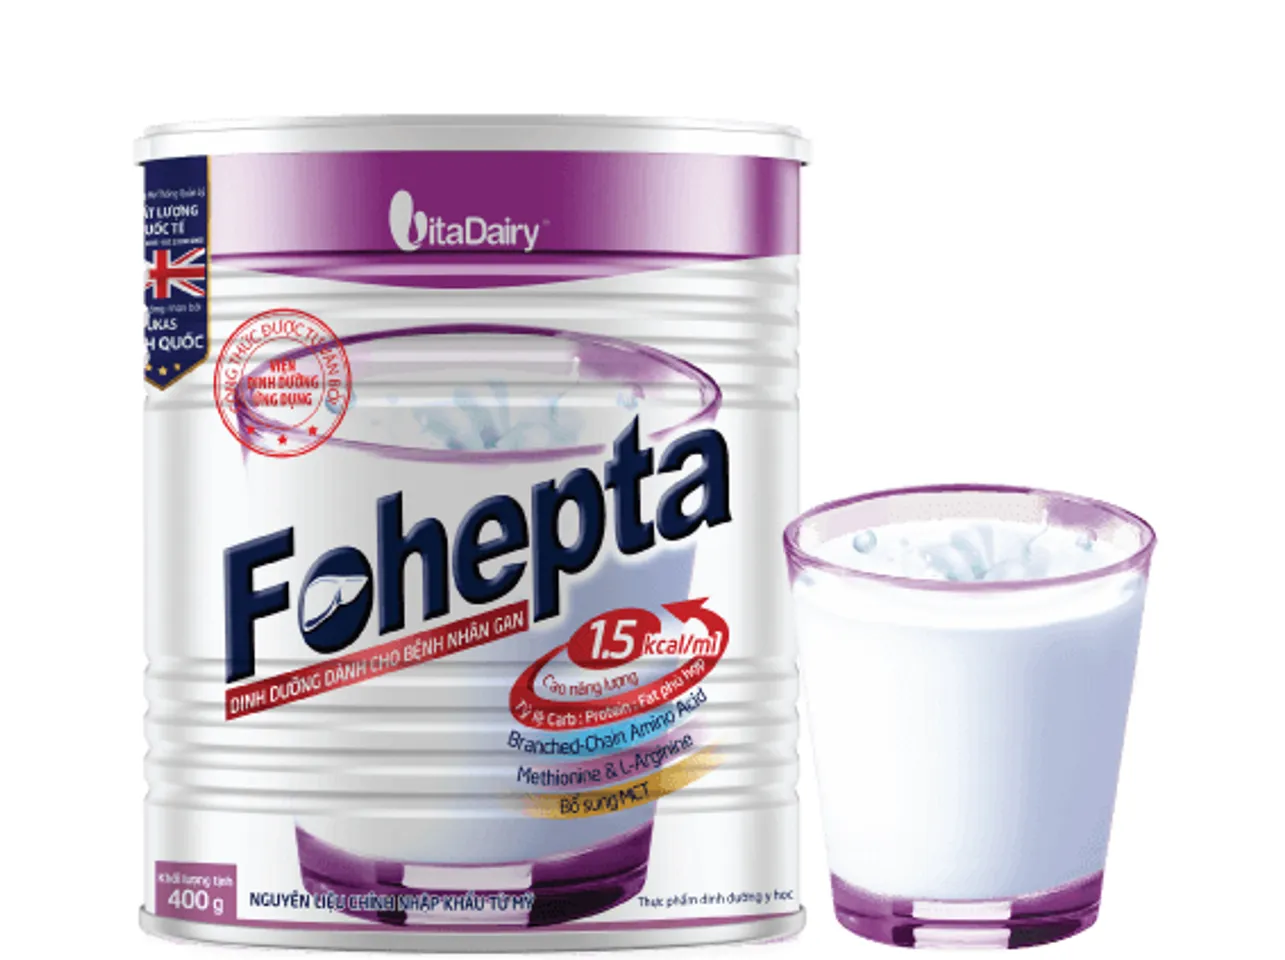 Sữa Fohepta chứa hàm lượng hợp lý gồm 25 vitamin và khoáng chất